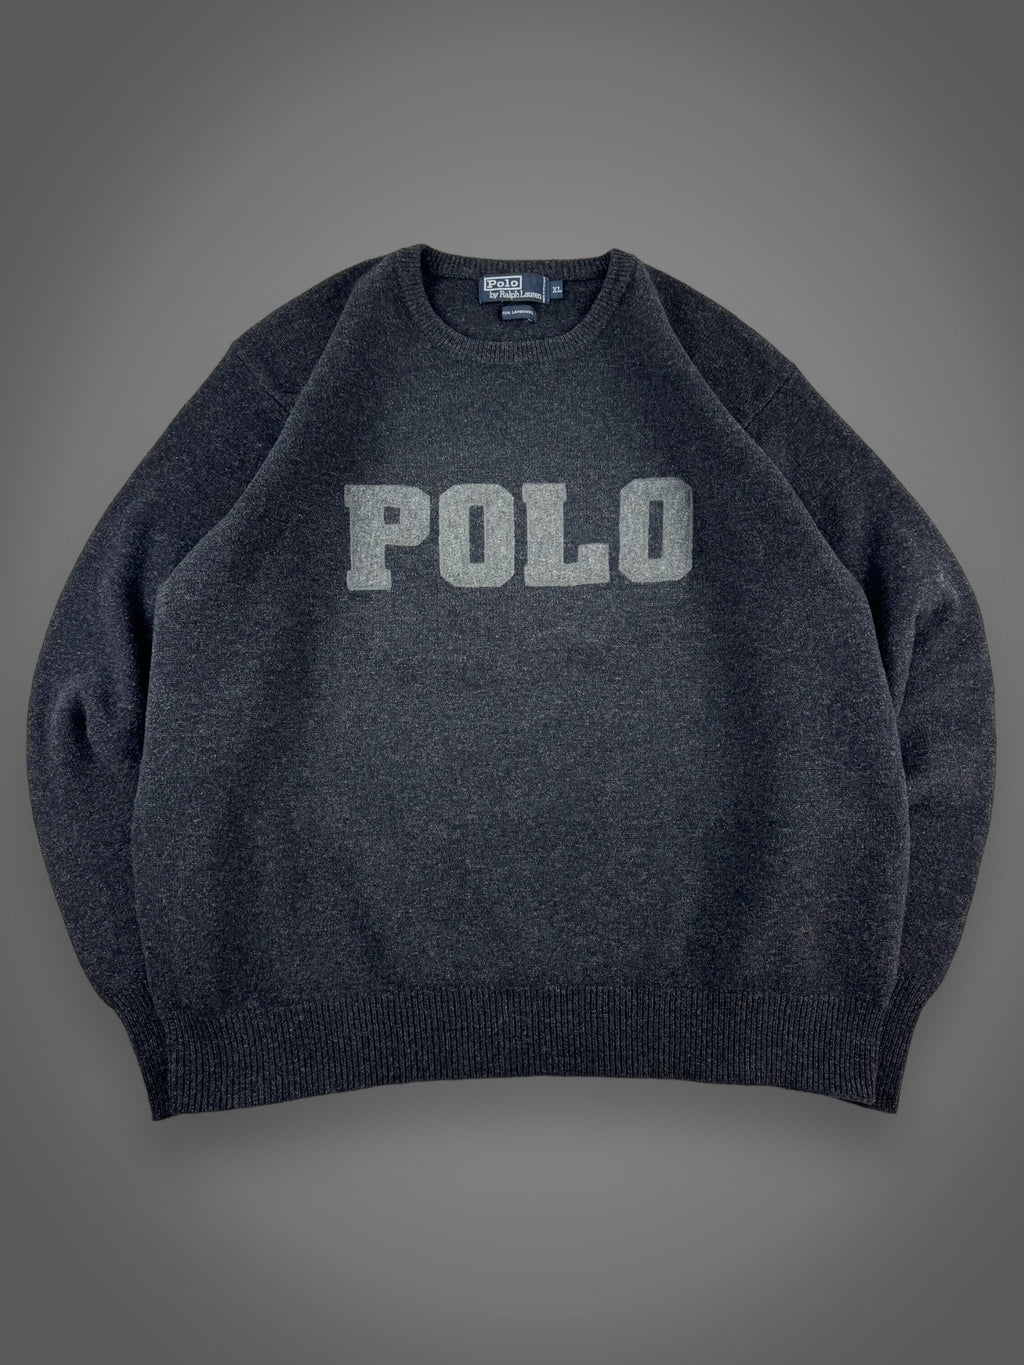 90s Polo Ralph Lauren lambswool lightweight sweater fits XL/XXL